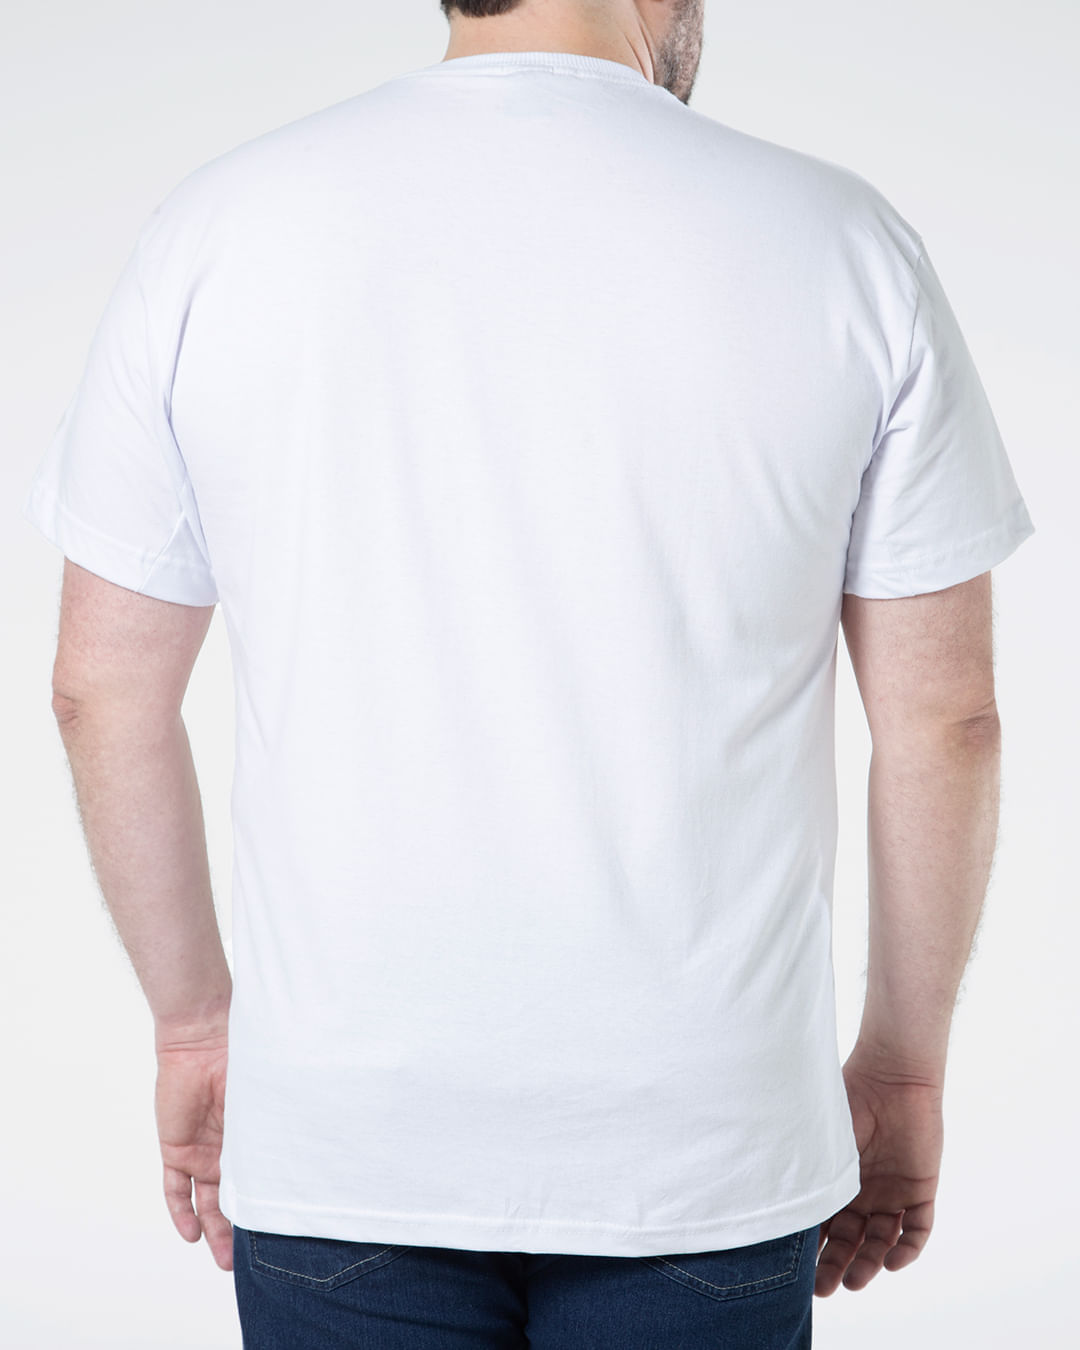 Camiseta-Masculina-Plus-Size-Estampada-Coqueiros-Fatal-Branca